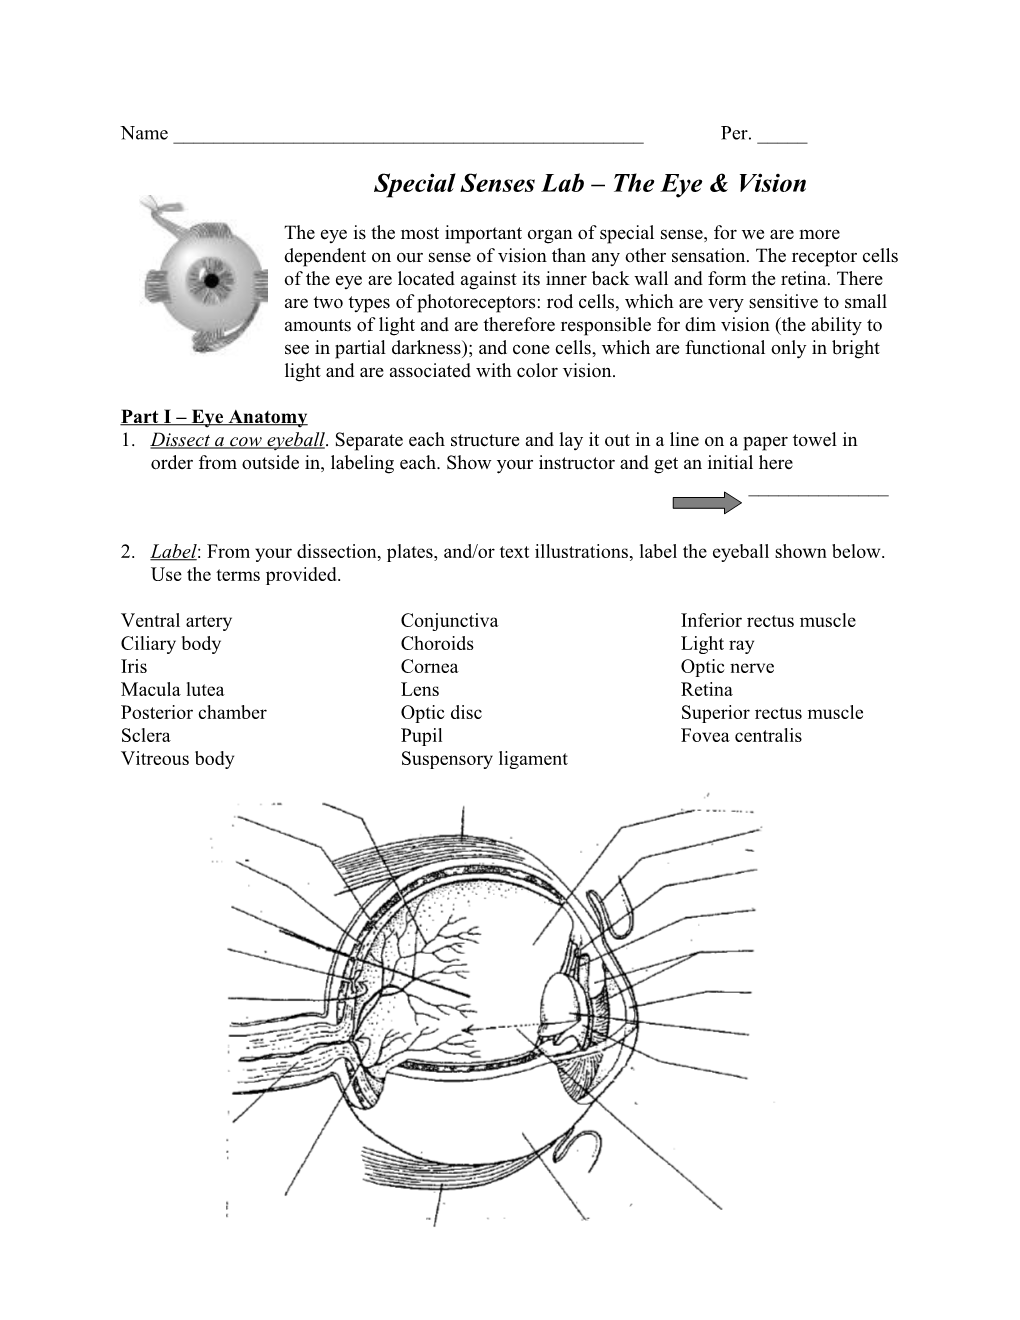 Part I Eye Anatomy